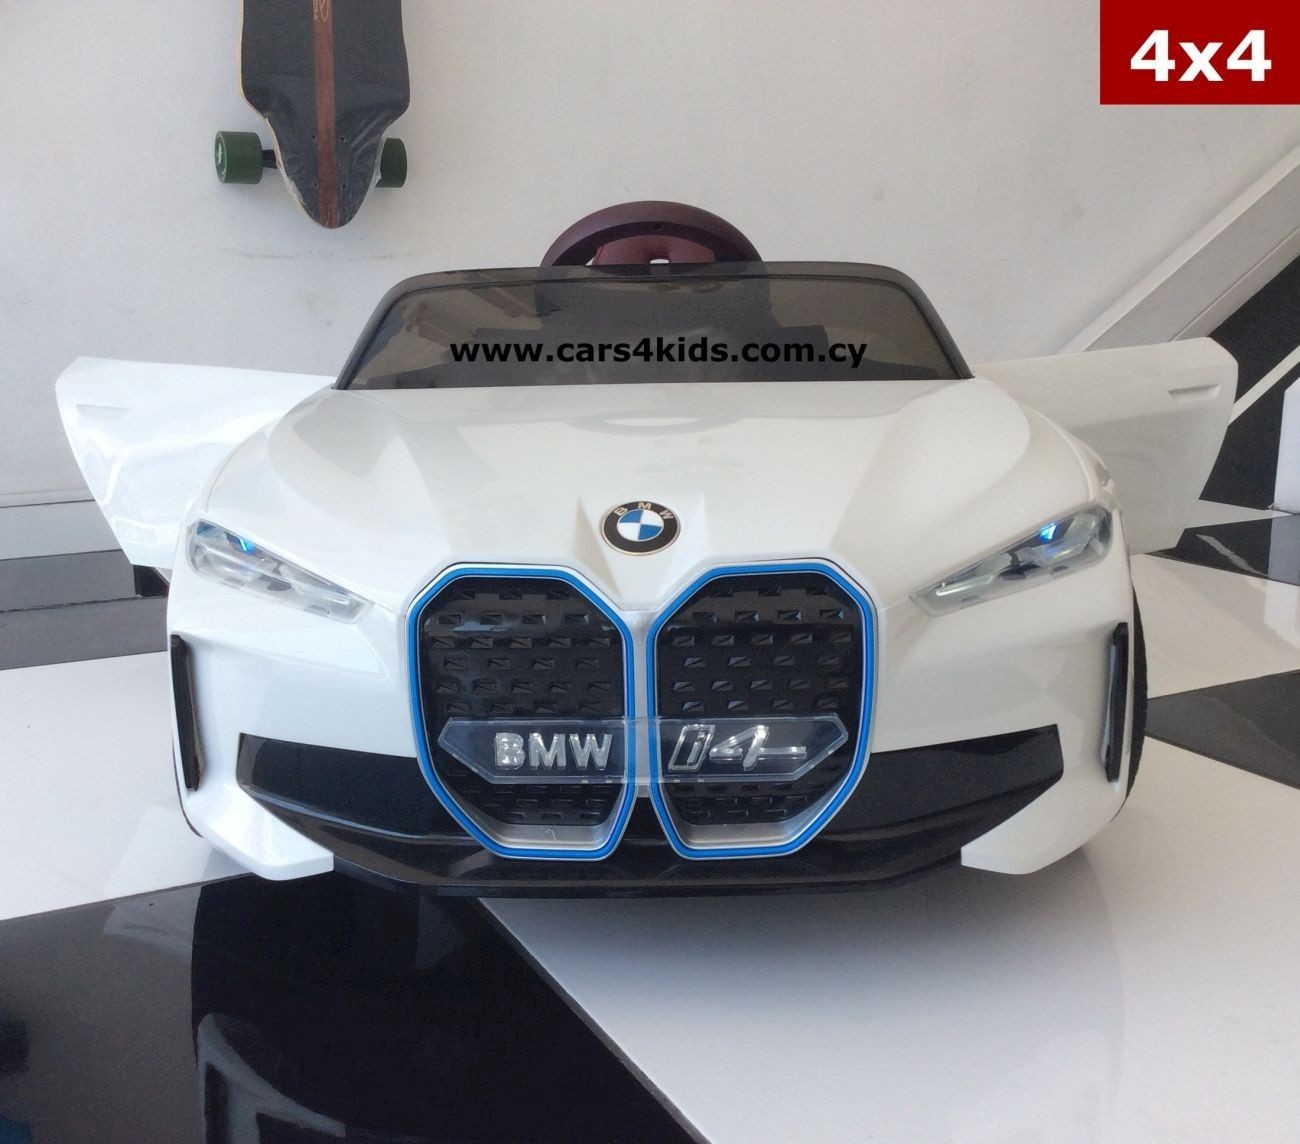 4x4 BMW i4 White with 2.4G R/C under License